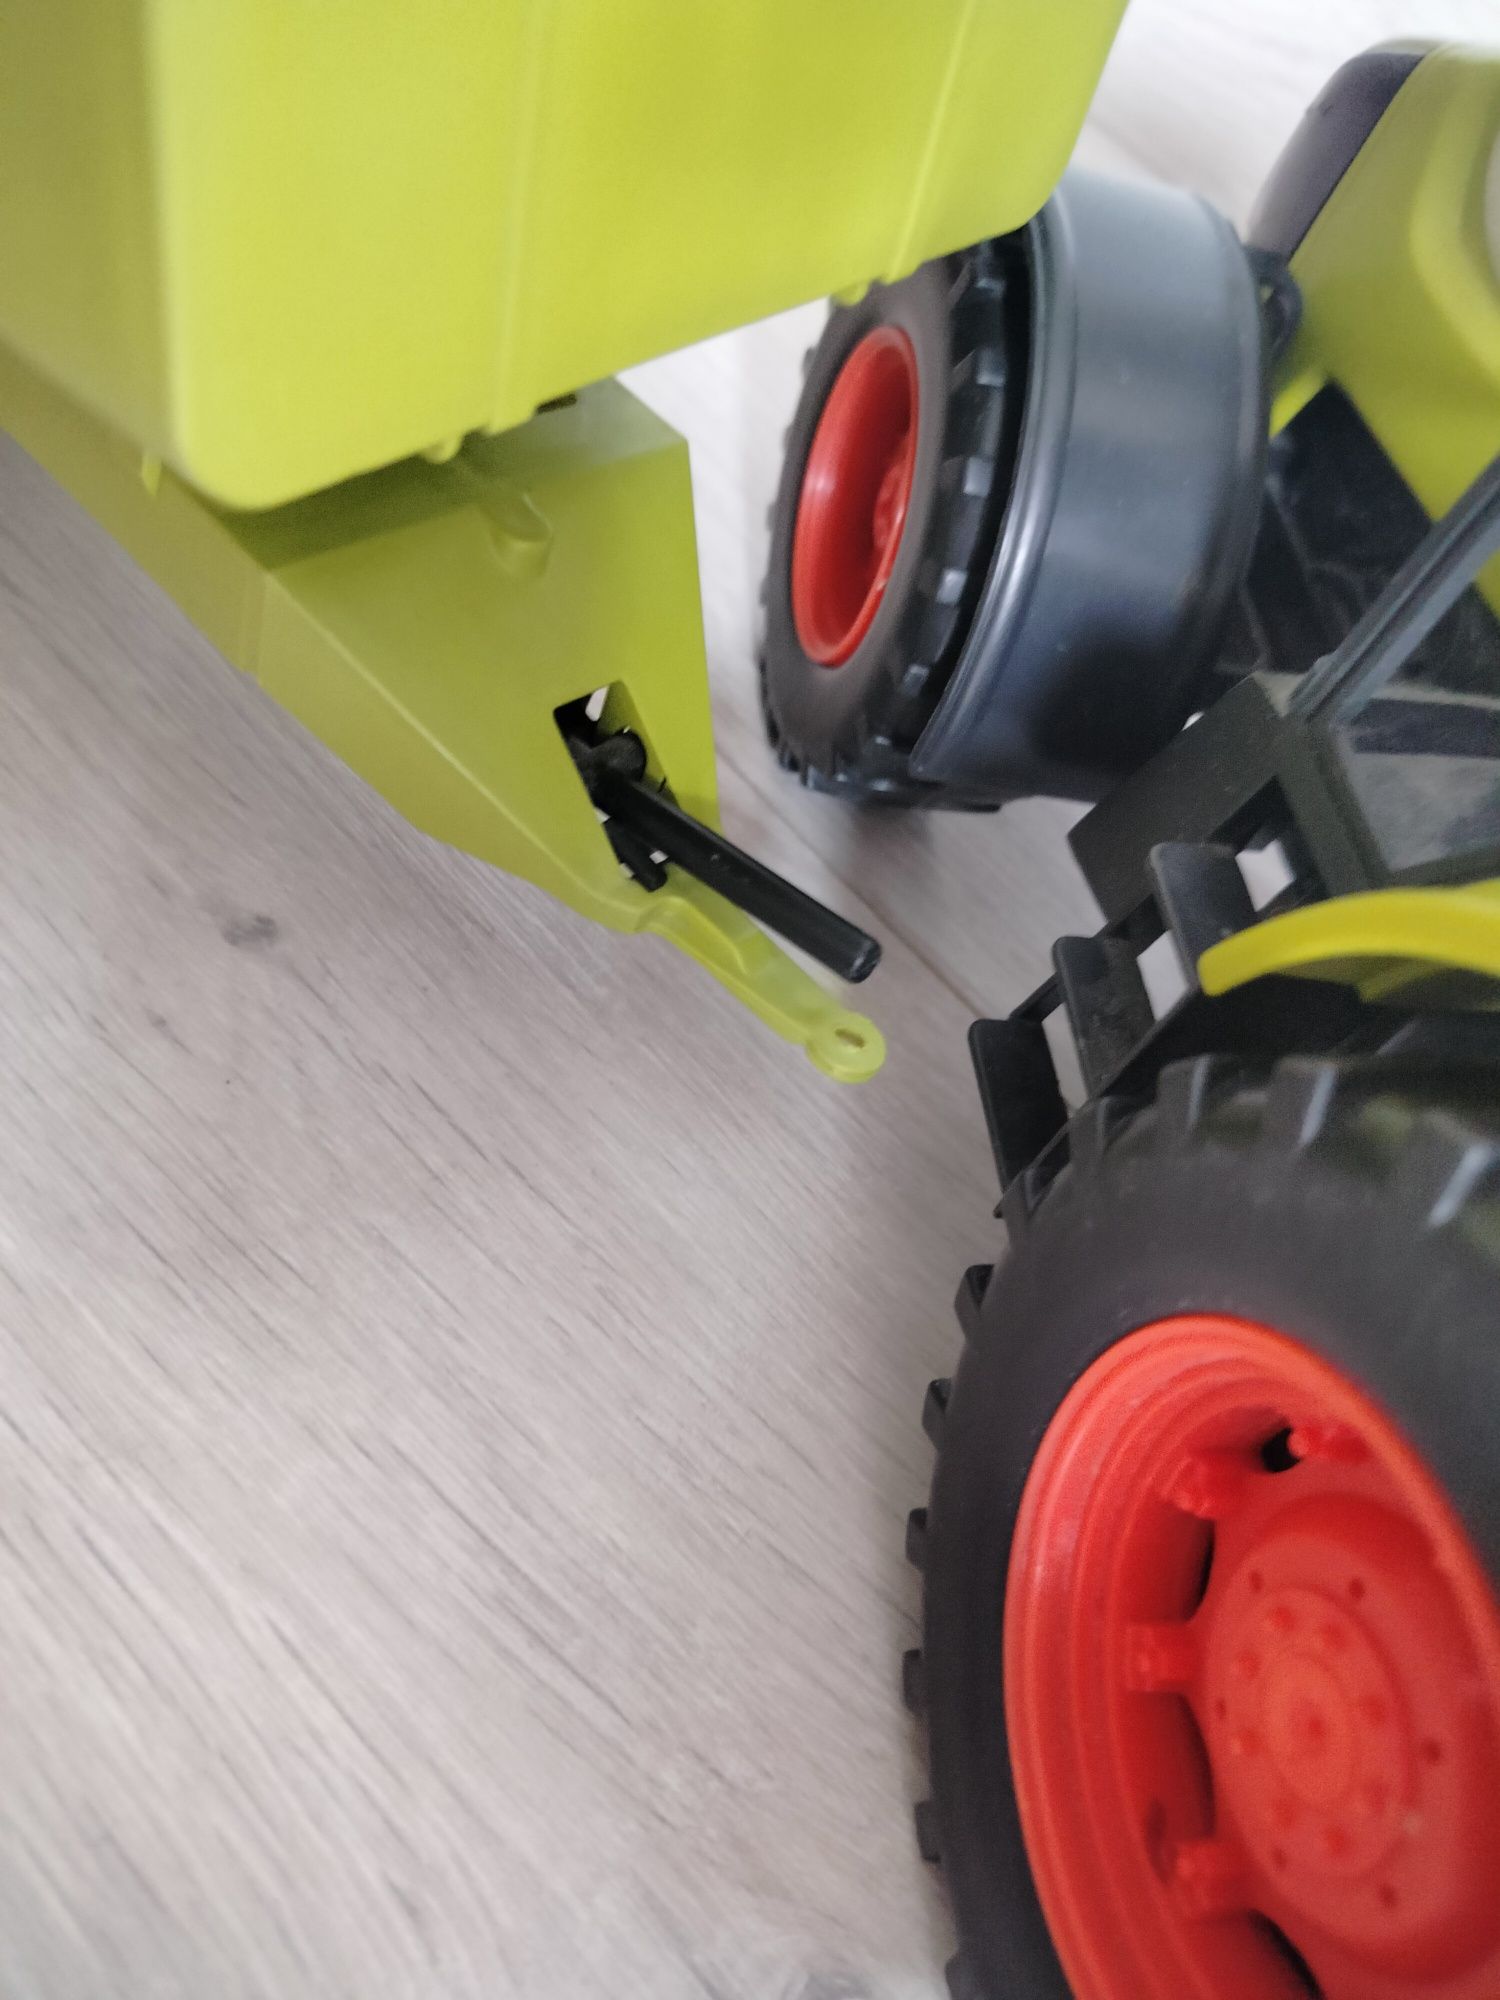 Claas traktor z przyczepą zabawka